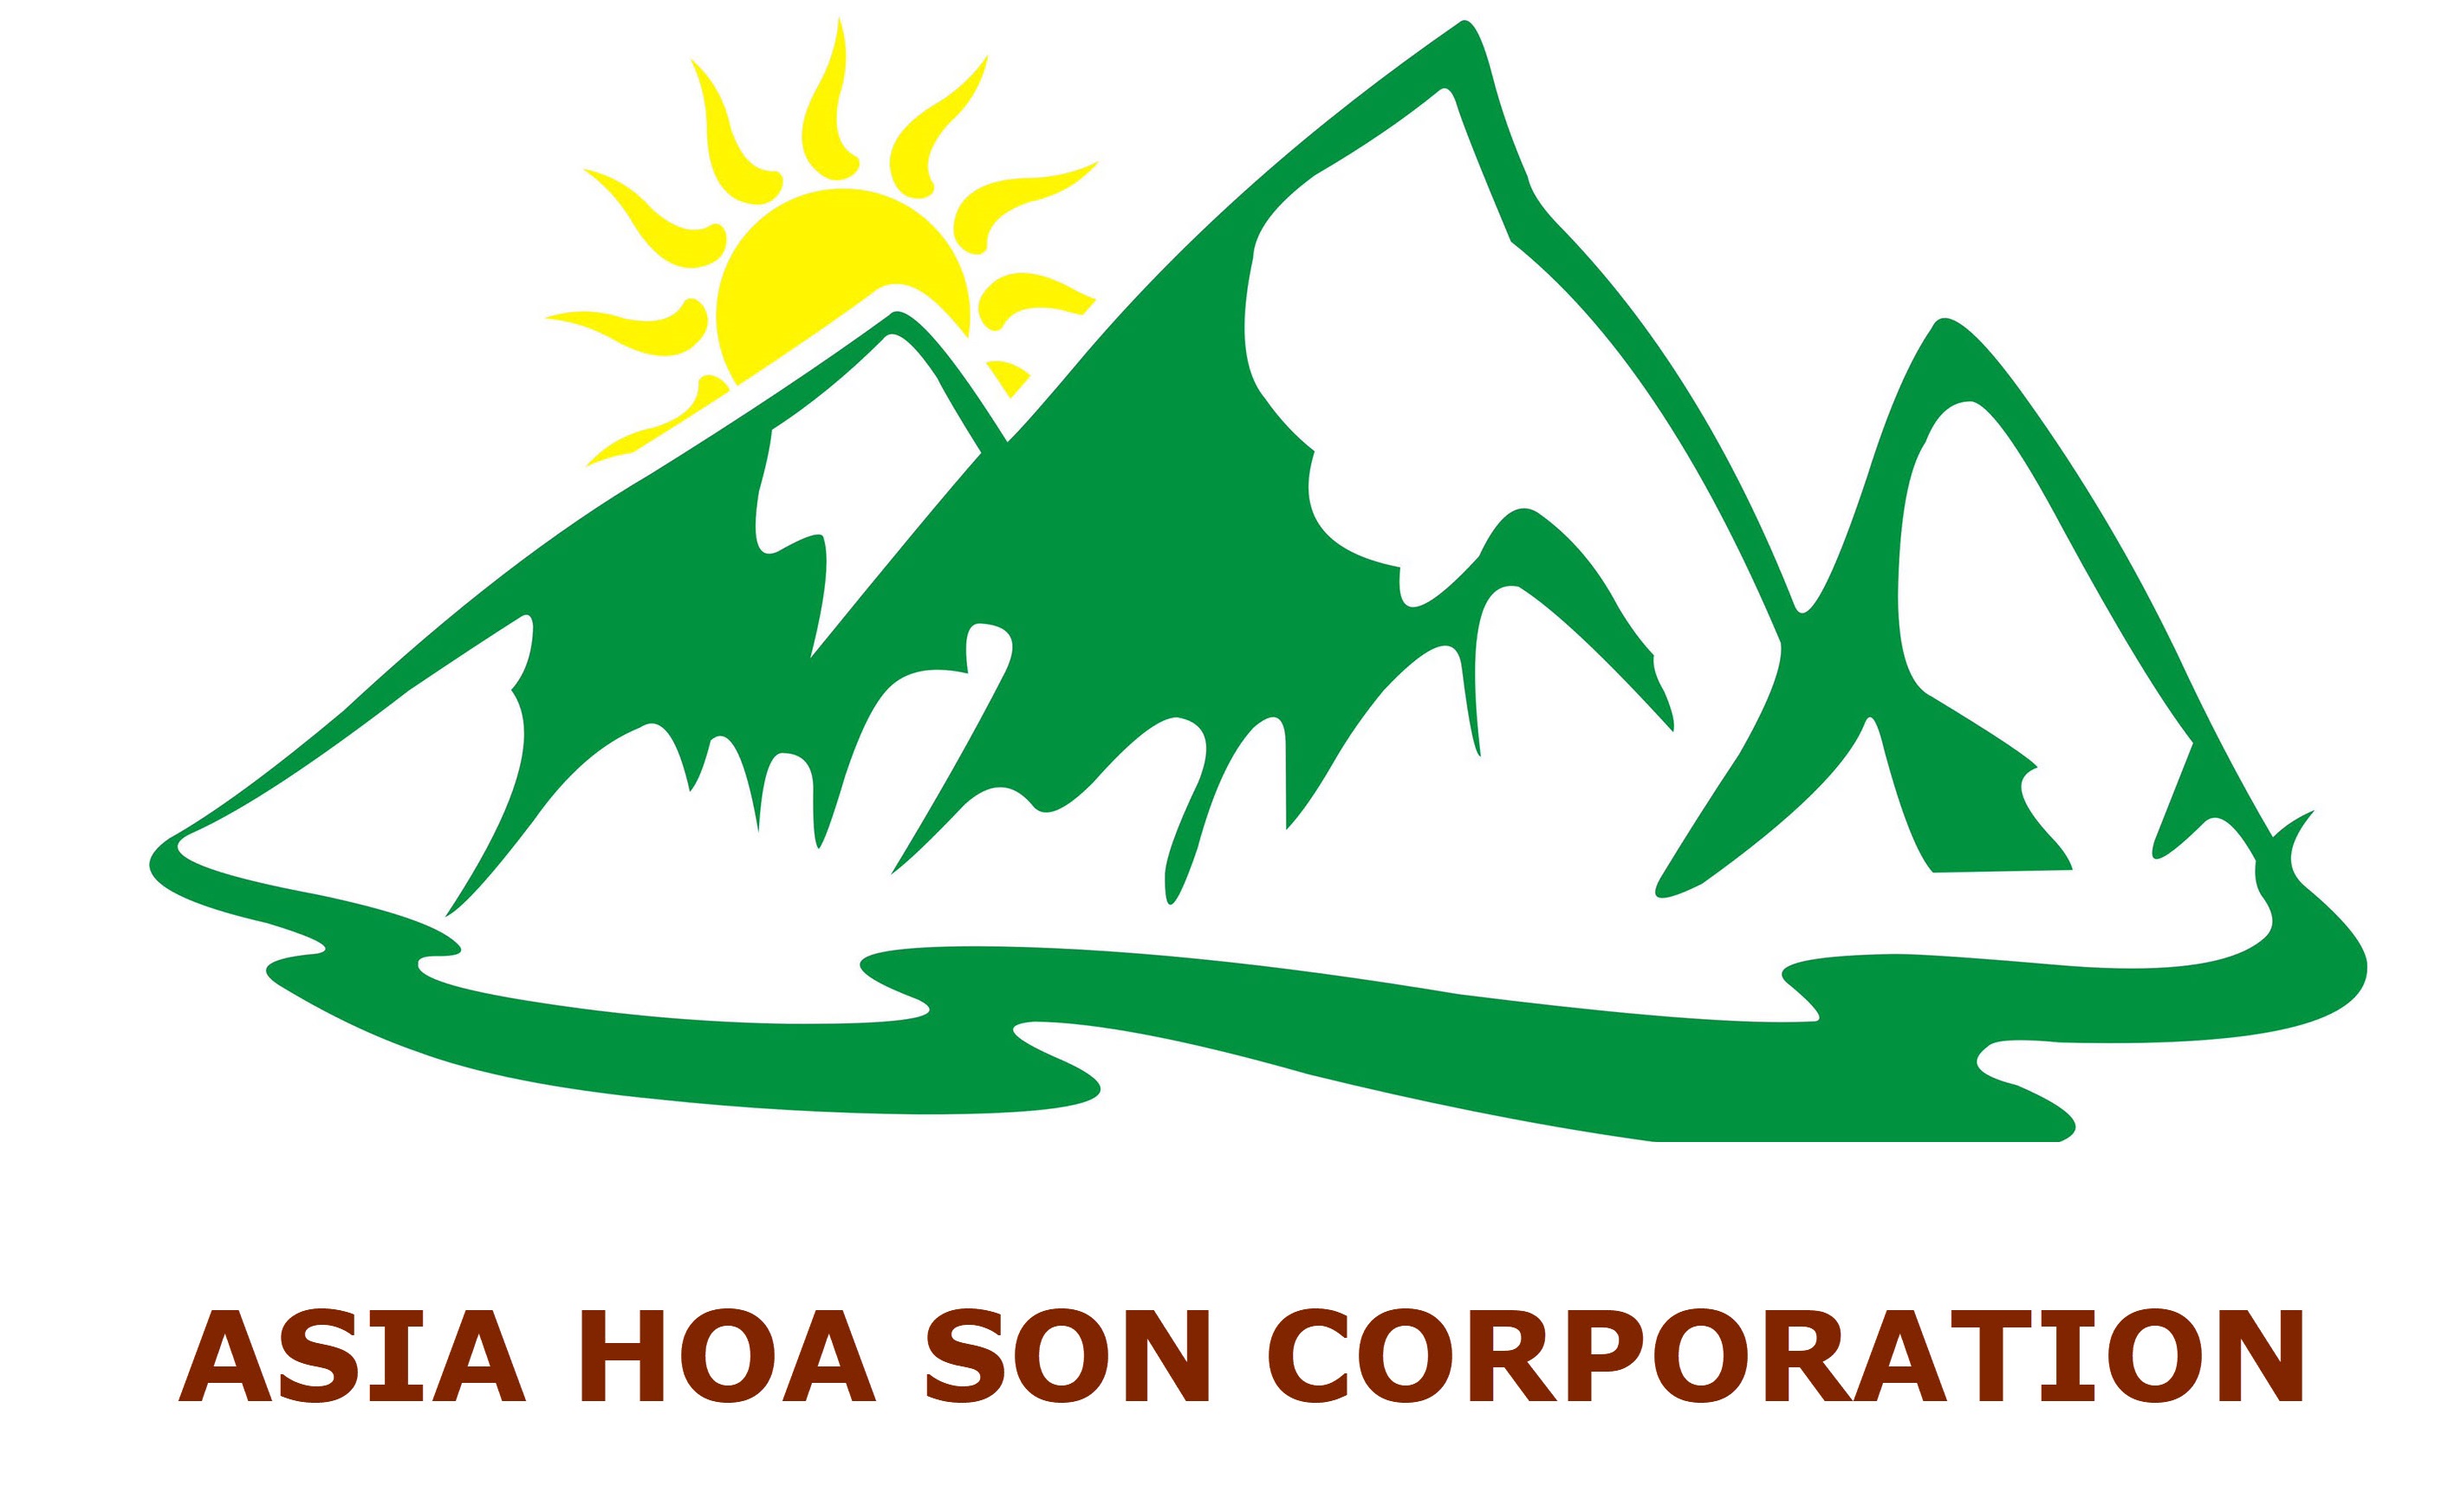 ASIA HOA SON CORPORATION - AHS